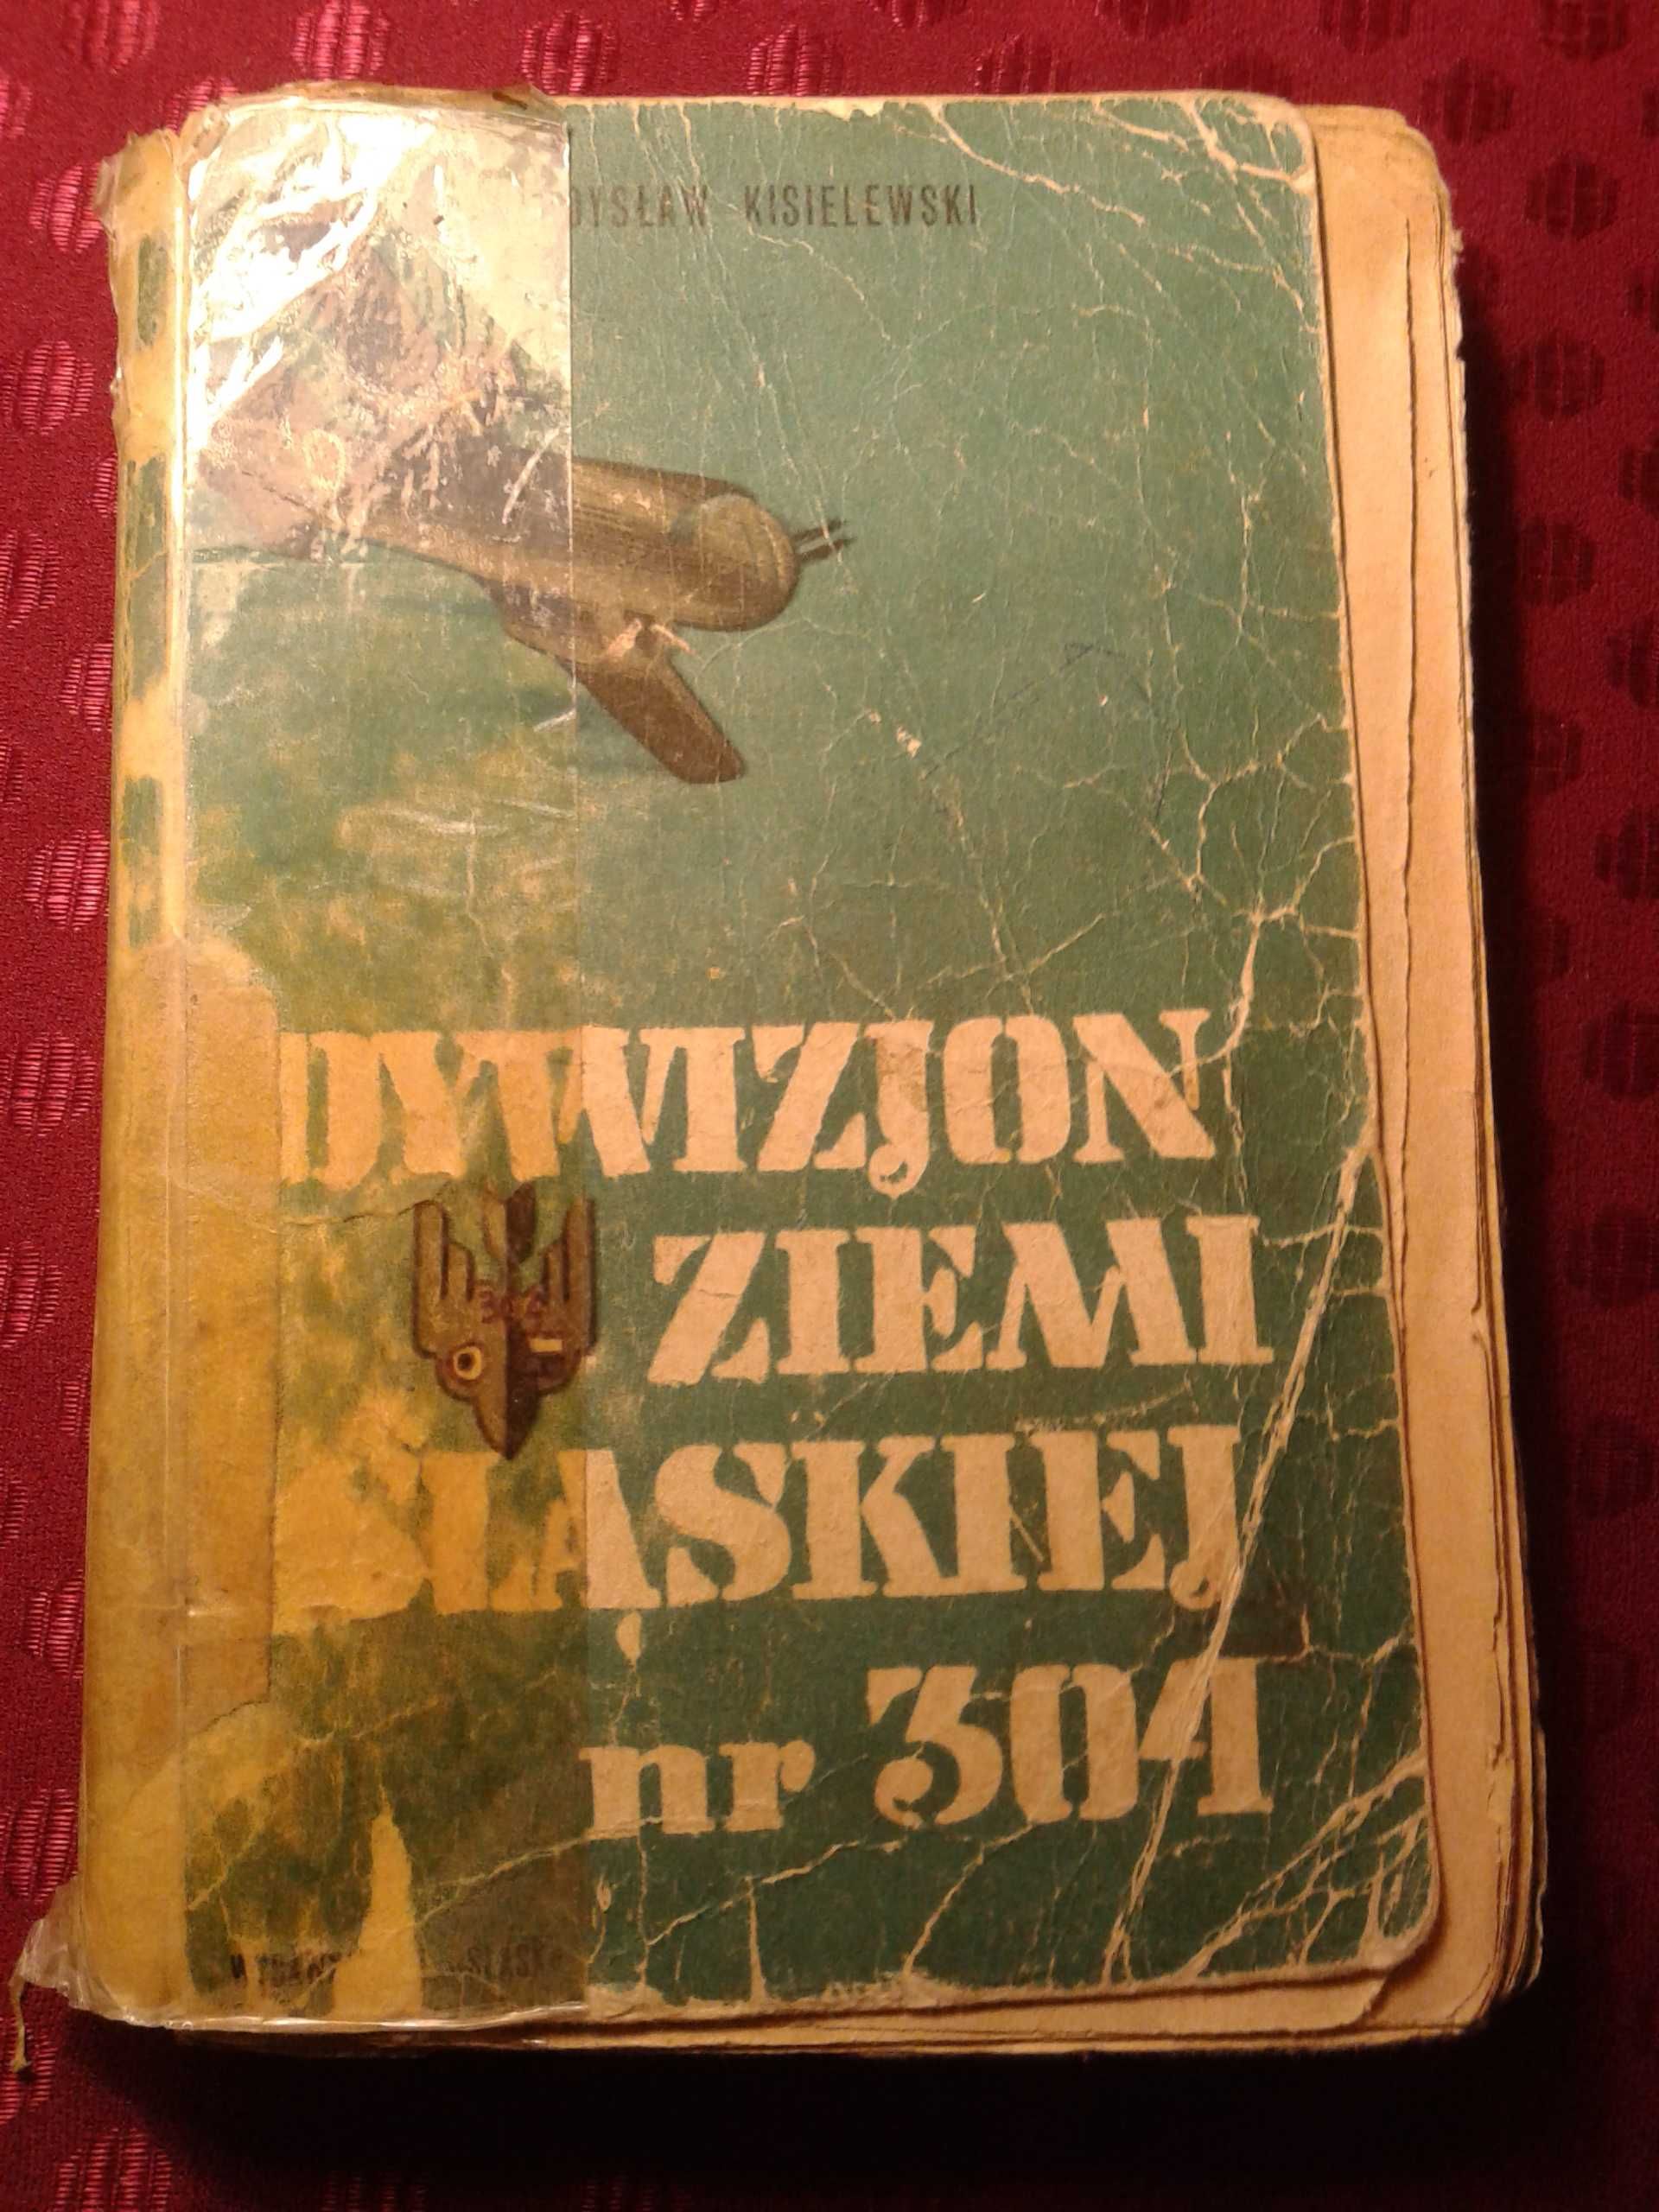 Dywizjon Ziemi Śląskiej nr 304 - Władysław Kisielewski.